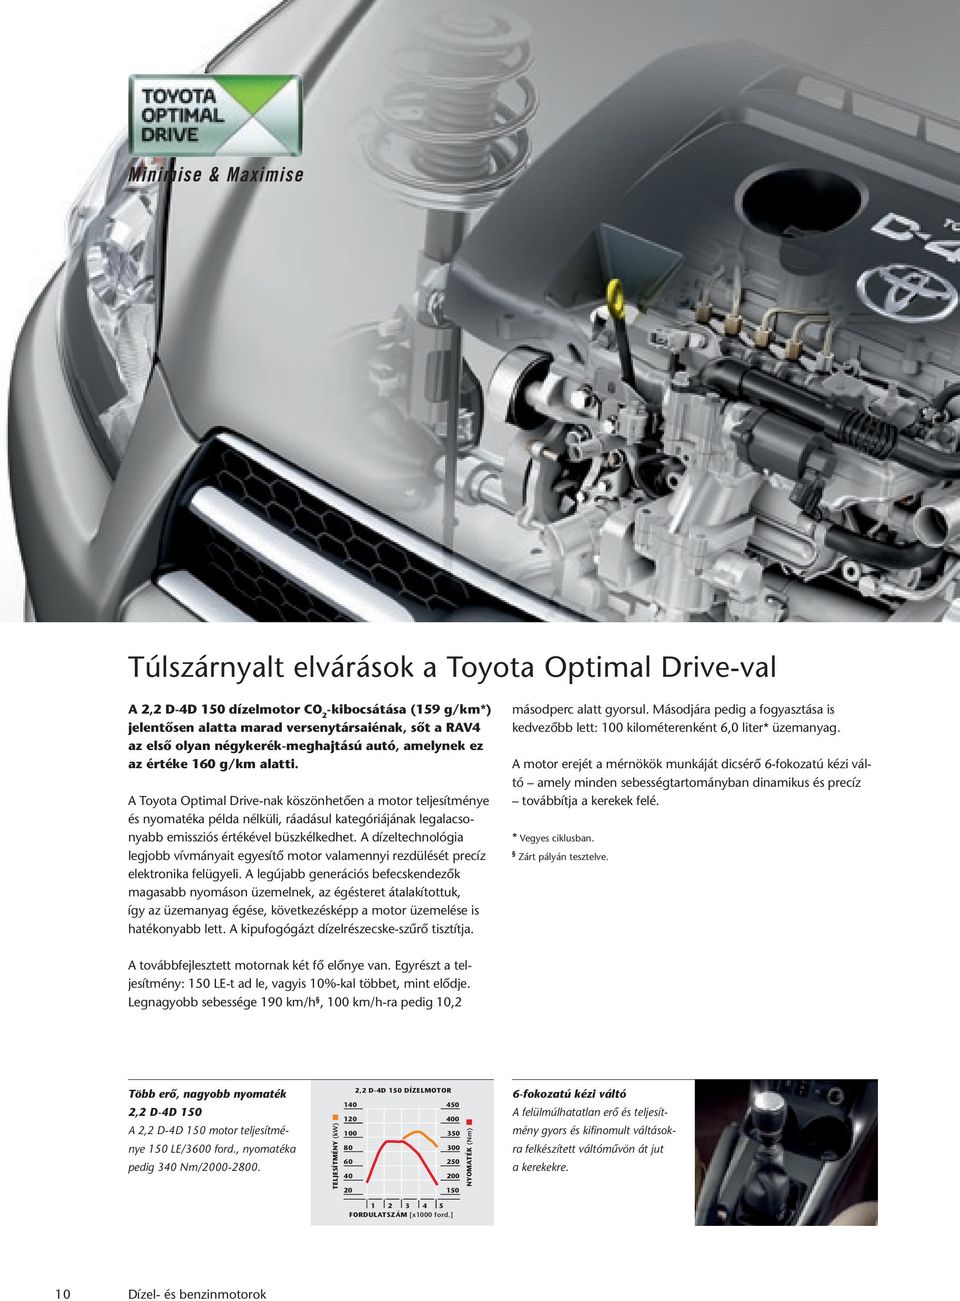 A Toyota Optimal Drive-nak köszönhetôen a motor teljesítménye és nyomatéka példa nélküli, ráadásul kategóriájának legalacsonyabb emissziós értékével büszkélkedhet.